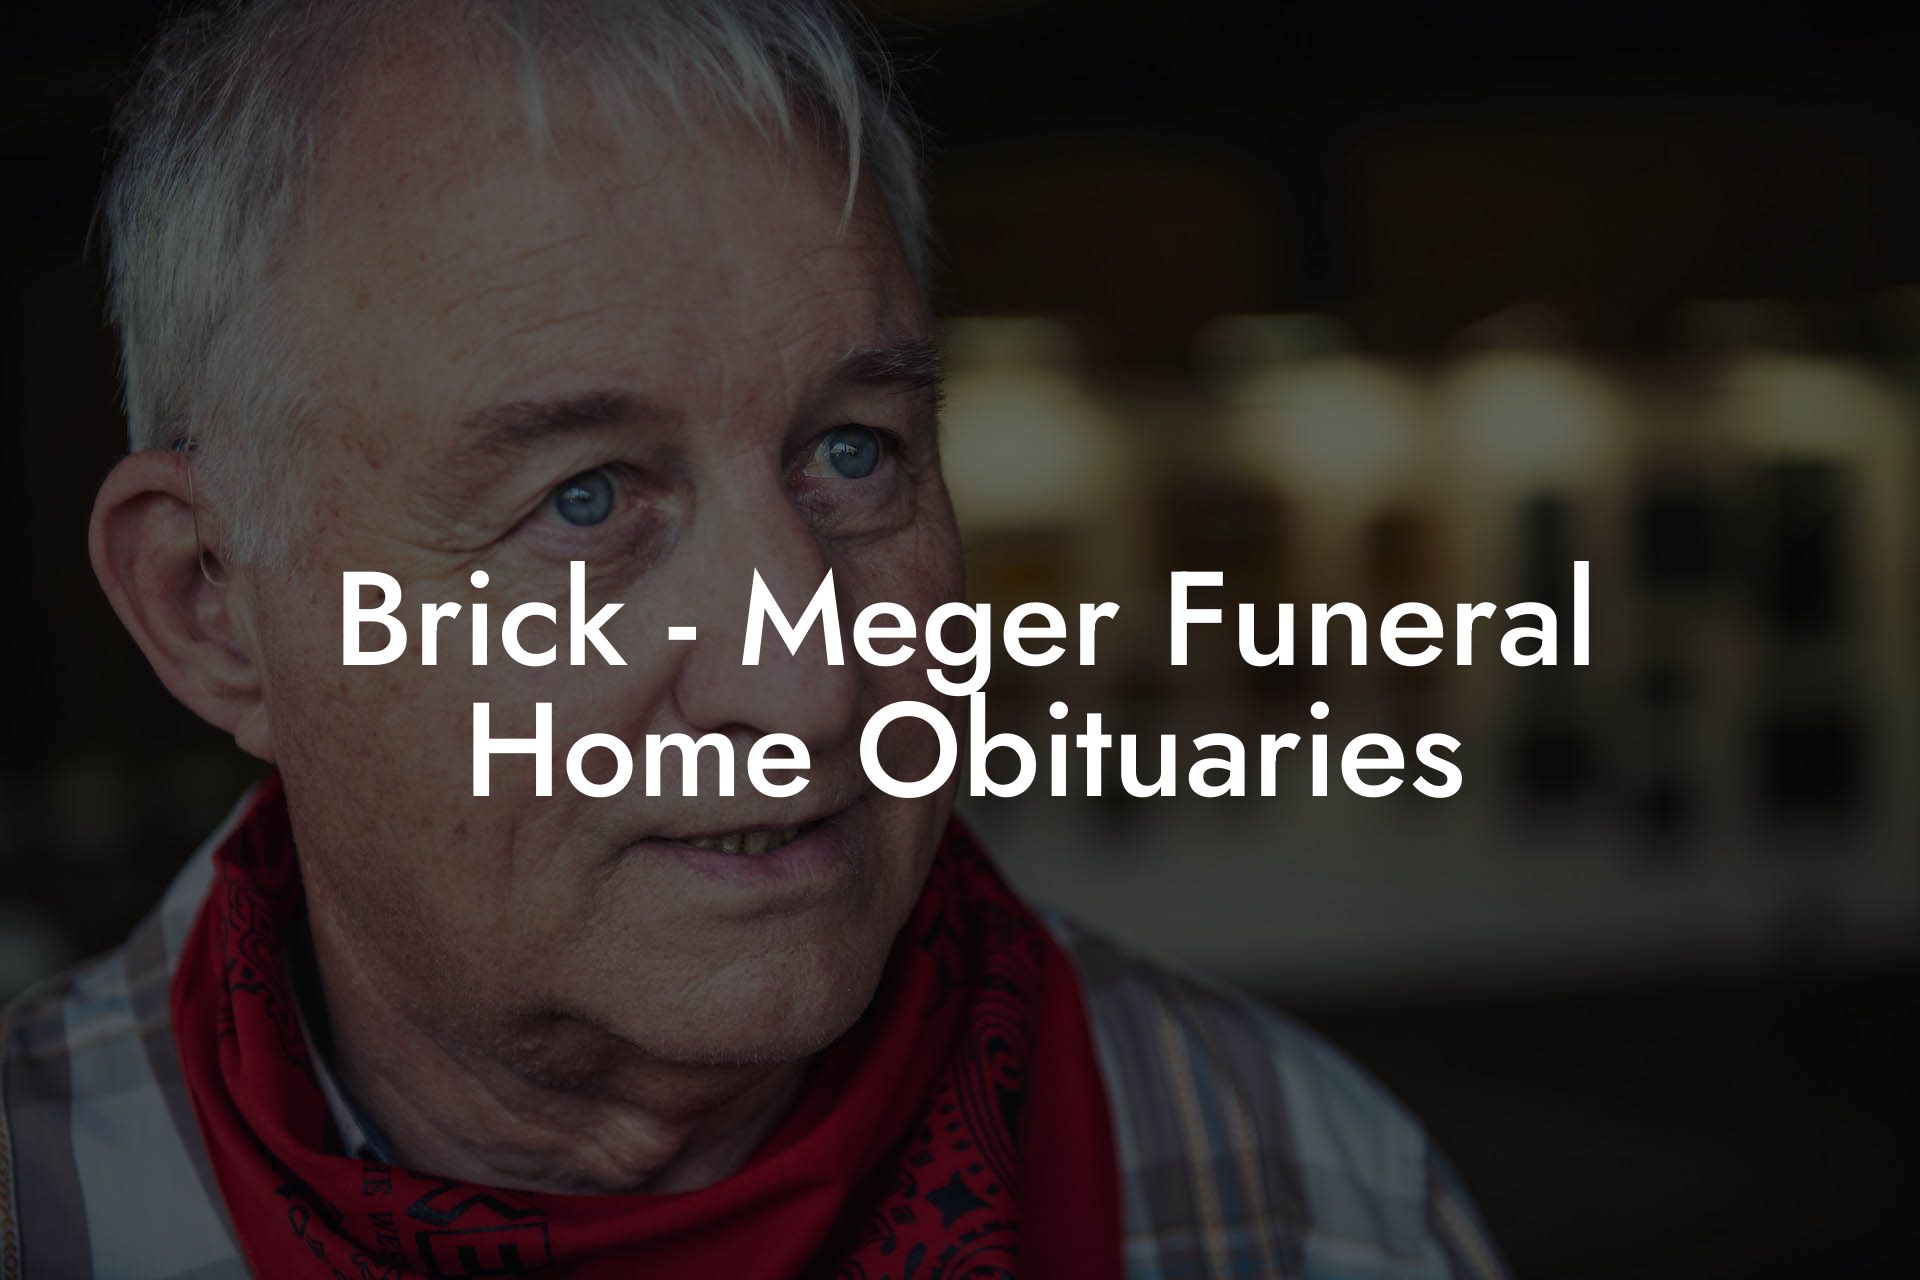 Brick - Meger Funeral Home Obituaries